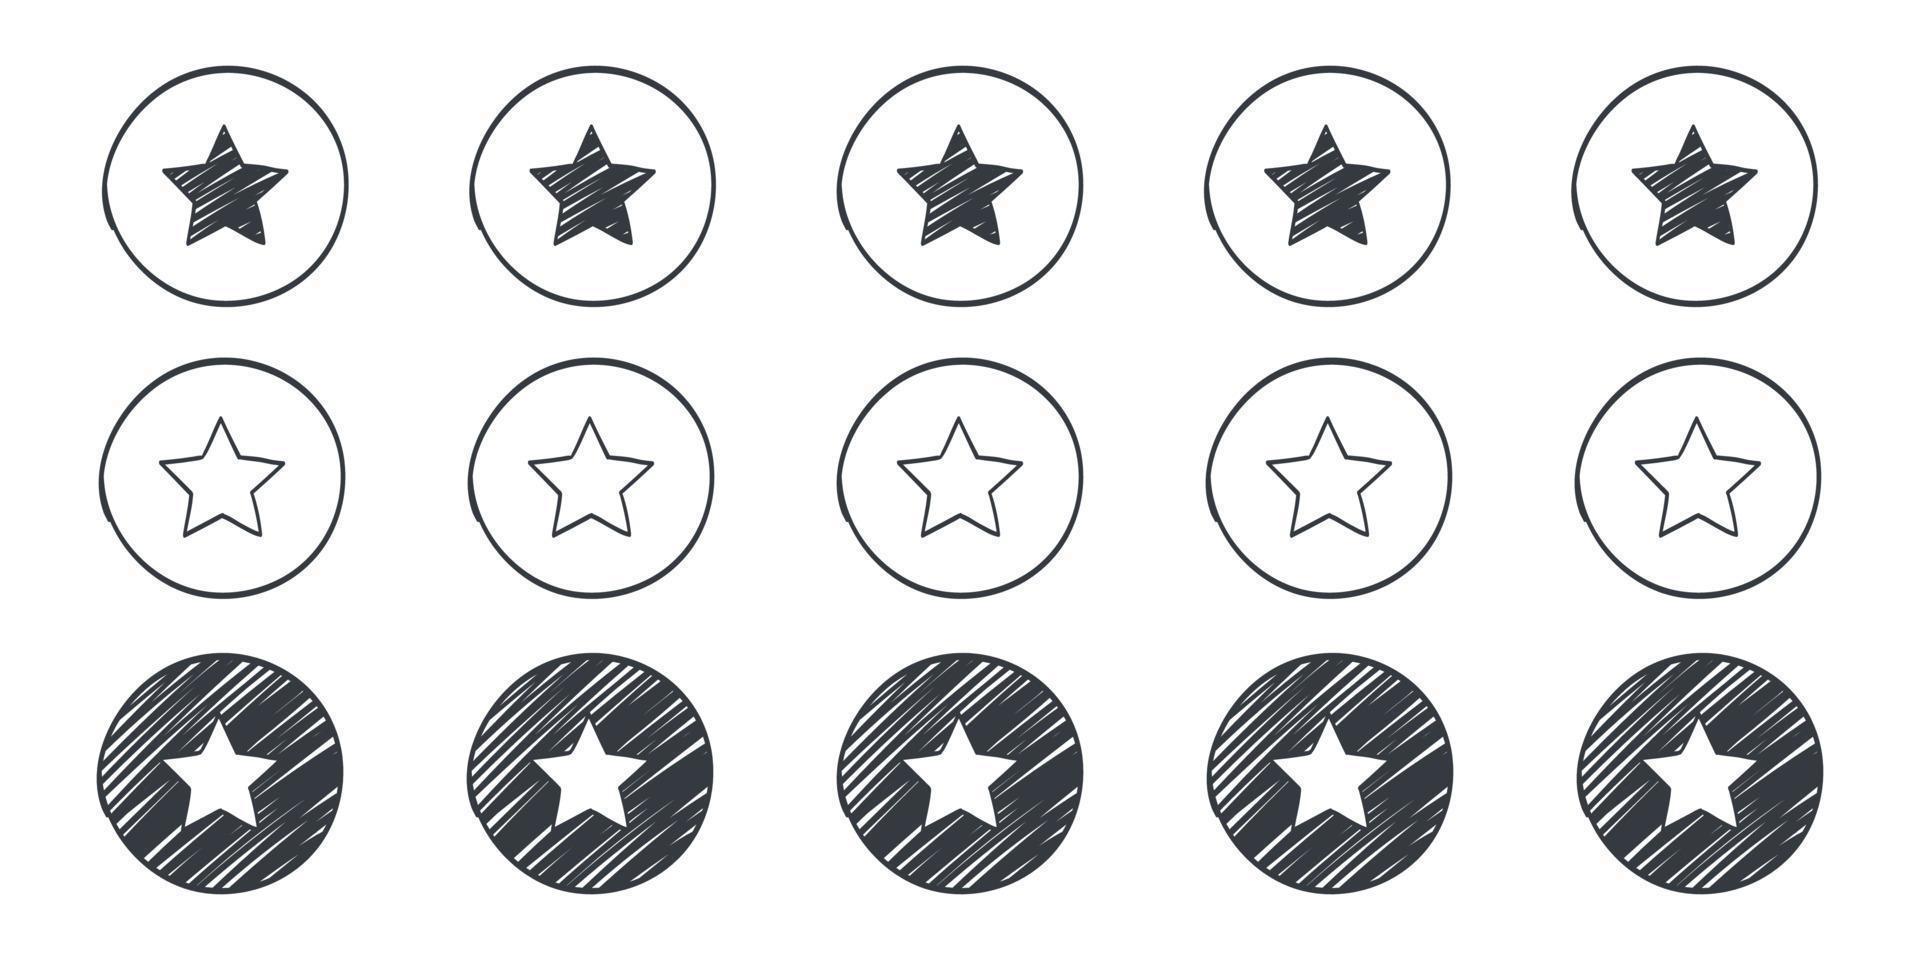 signos de calificación de calidad. iconos de estrellas de fideos. iconos dibujados de estrellas. ilustración vectorial vector